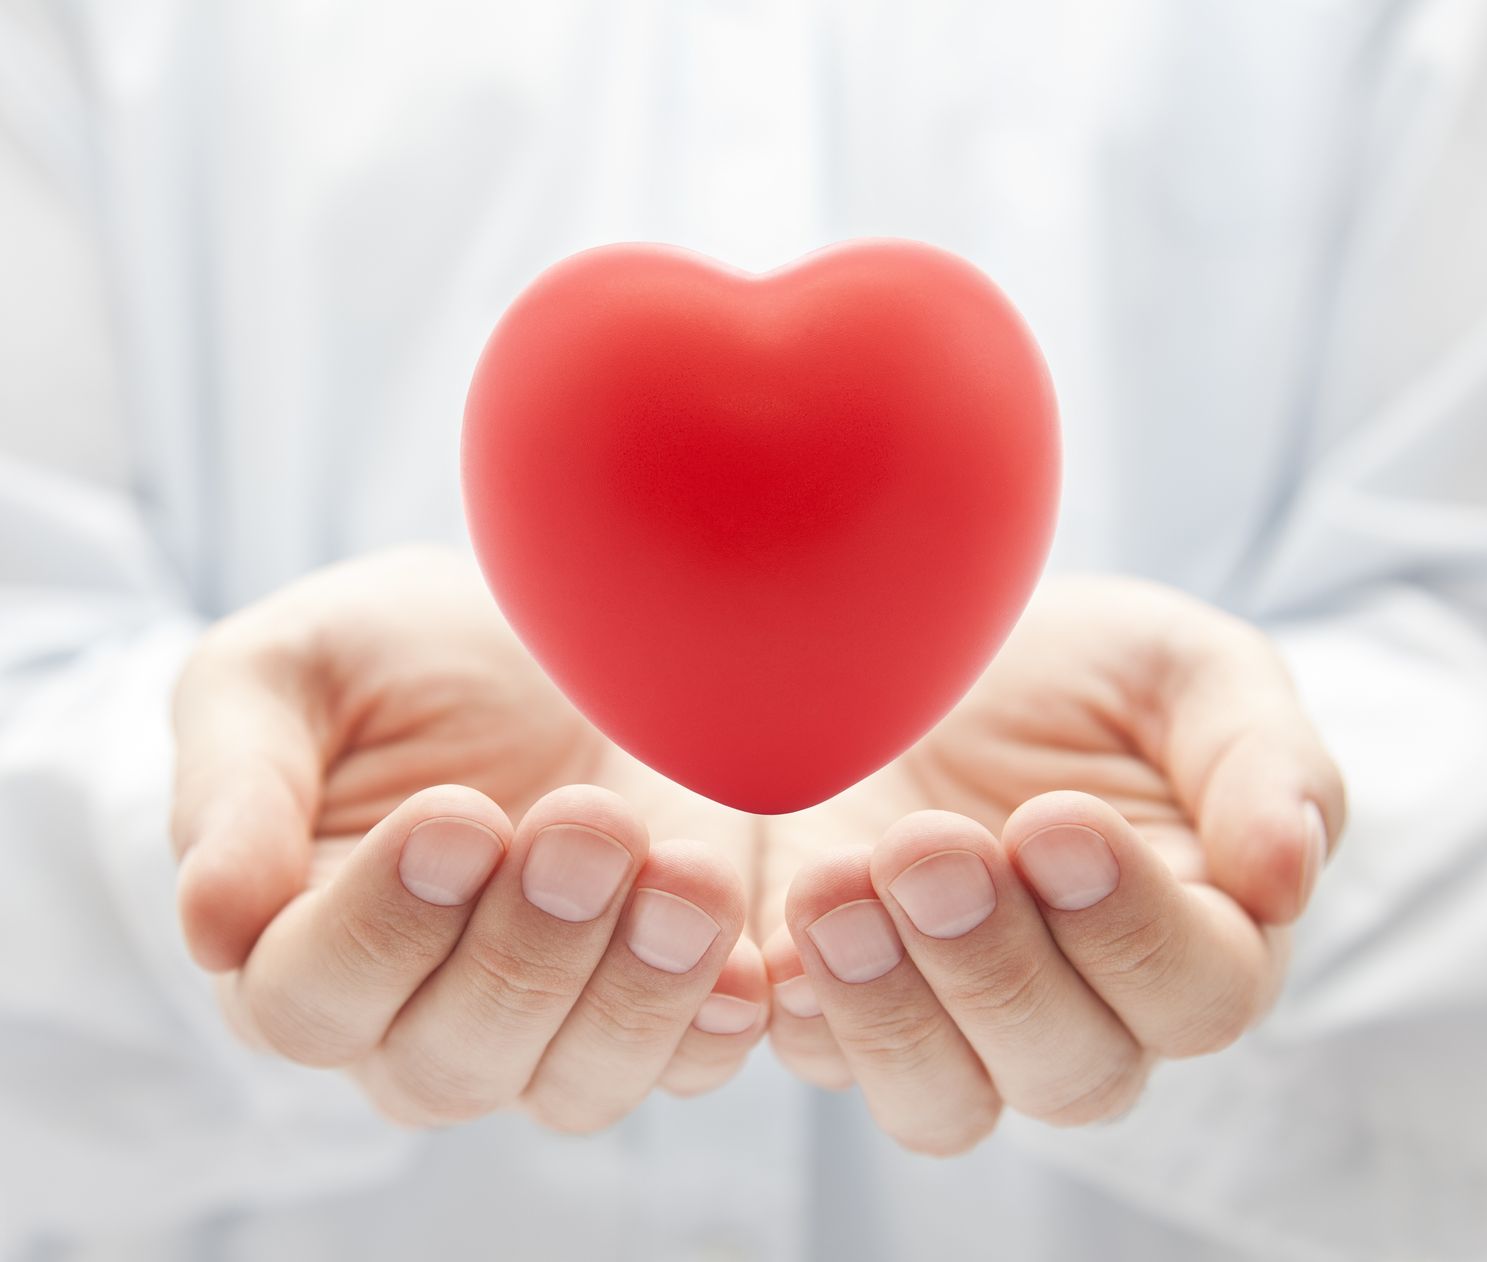 Dietoterápia jelentősége szív- és érrendszeri betegségek esetén